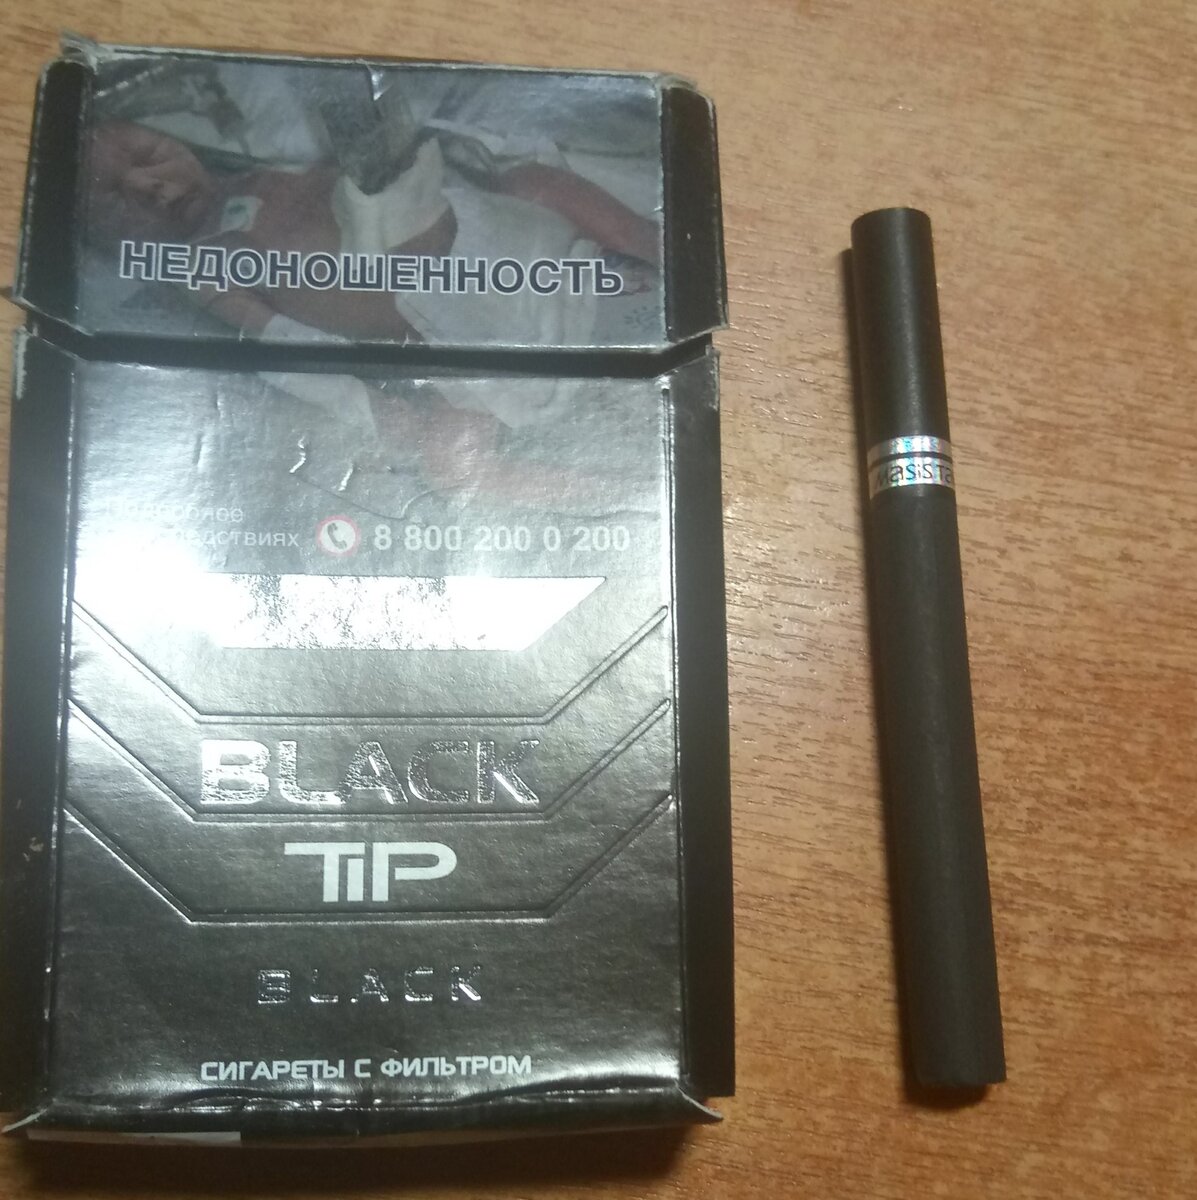 Топ сигарет. Сигареты Блэк тим. Чёрные сигареты марки. Сигареты в черной пачке. Чёрные сигареты марки недорогие.